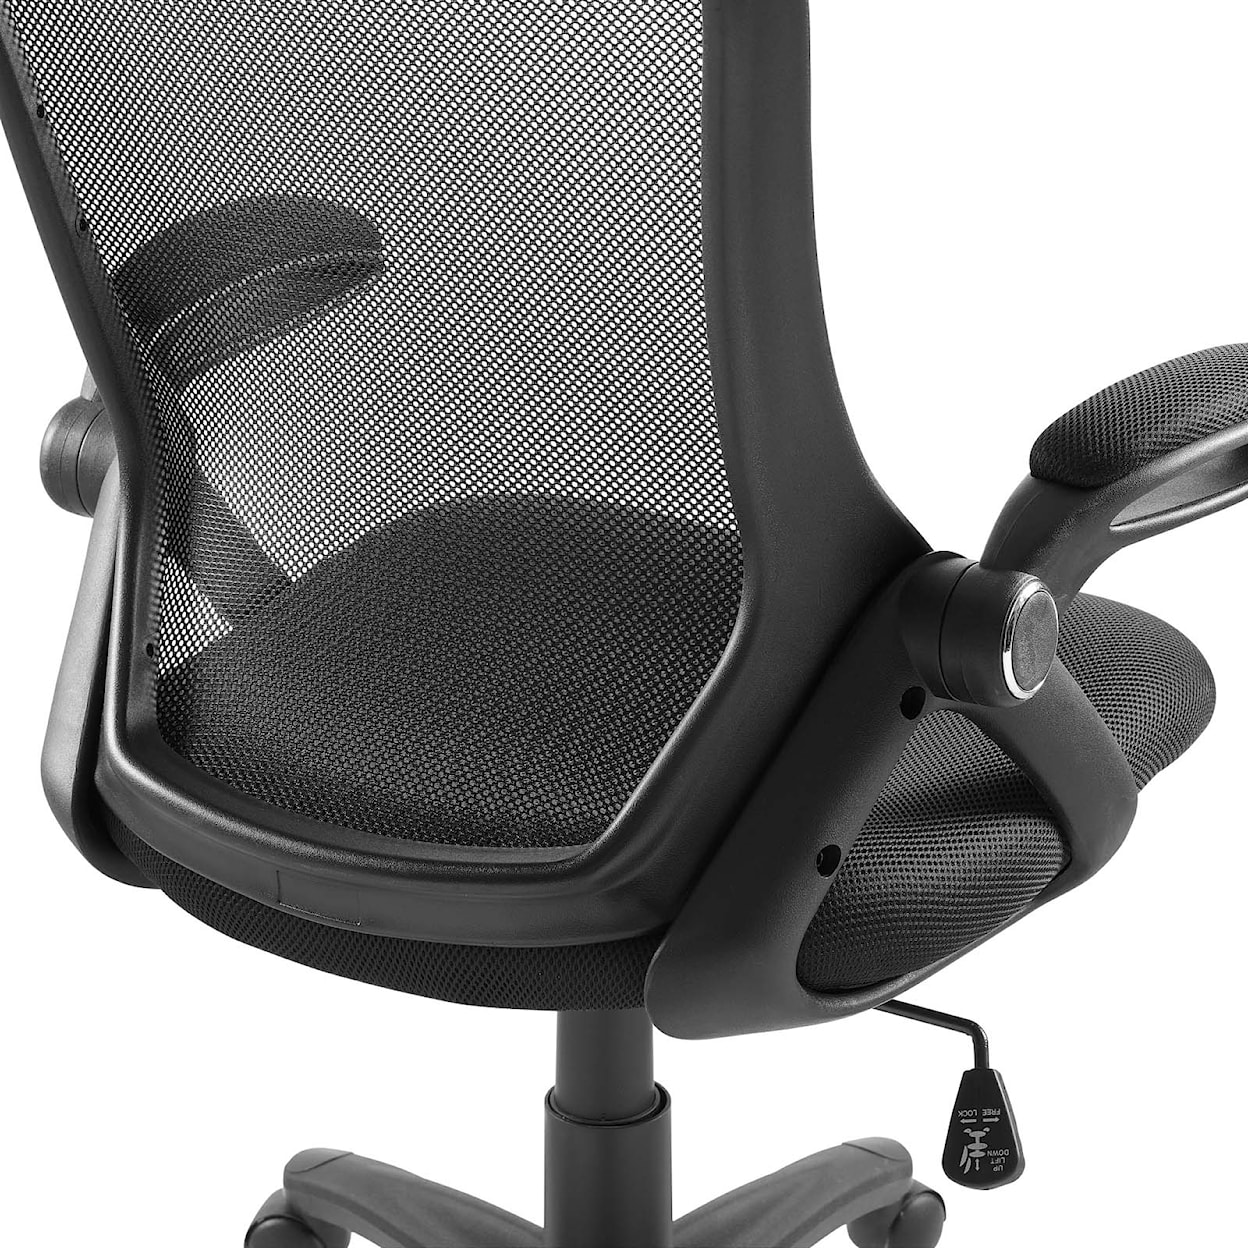 Modway Assert Mesh Office Chair